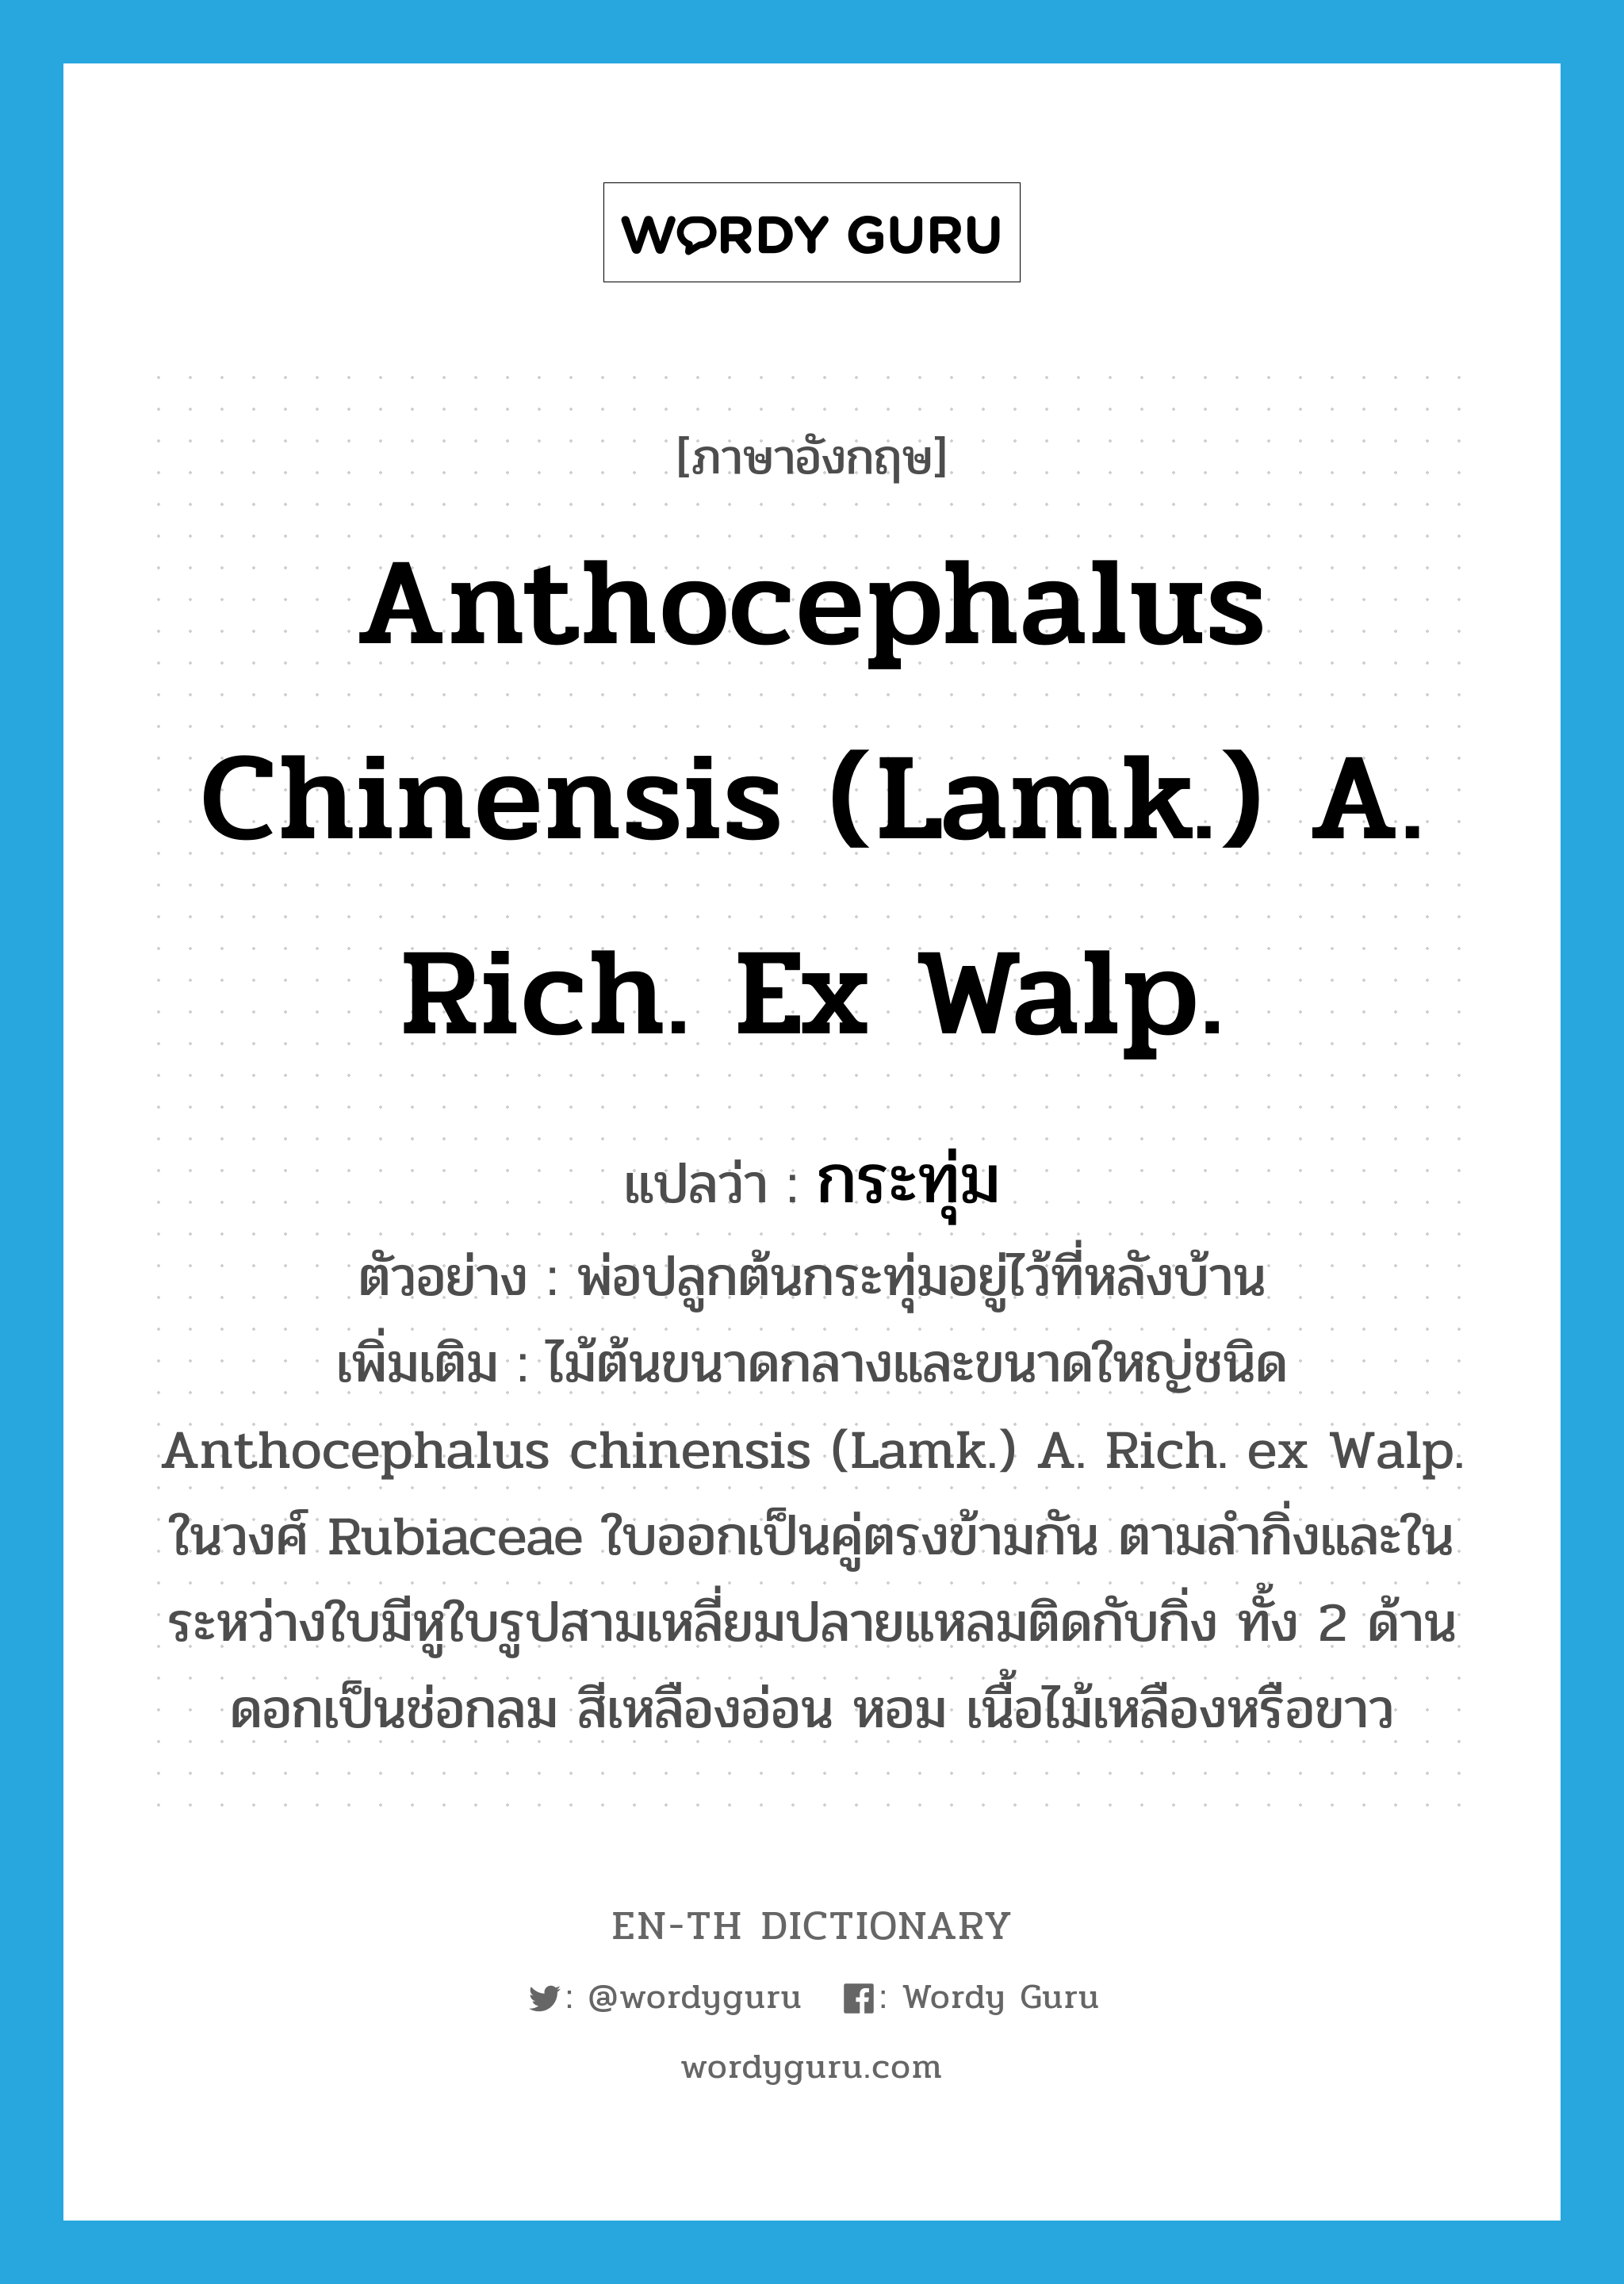 Anthocephalus chinensis (Lamk.) A. Rich. ex Walp. แปลว่า?, คำศัพท์ภาษาอังกฤษ Anthocephalus chinensis (Lamk.) A. Rich. ex Walp. แปลว่า กระทุ่ม ประเภท N ตัวอย่าง พ่อปลูกต้นกระทุ่มอยู่ไว้ที่หลังบ้าน เพิ่มเติม ไม้ต้นขนาดกลางและขนาดใหญ่ชนิด Anthocephalus chinensis (Lamk.) A. Rich. ex Walp. ในวงศ์ Rubiaceae ใบออกเป็นคู่ตรงข้ามกัน ตามลำกิ่งและในระหว่างใบมีหูใบรูปสามเหลี่ยมปลายแหลมติดกับกิ่ง ทั้ง 2 ด้าน ดอกเป็นช่อกลม สีเหลืองอ่อน หอม เนื้อไม้เหลืองหรือขาว หมวด N